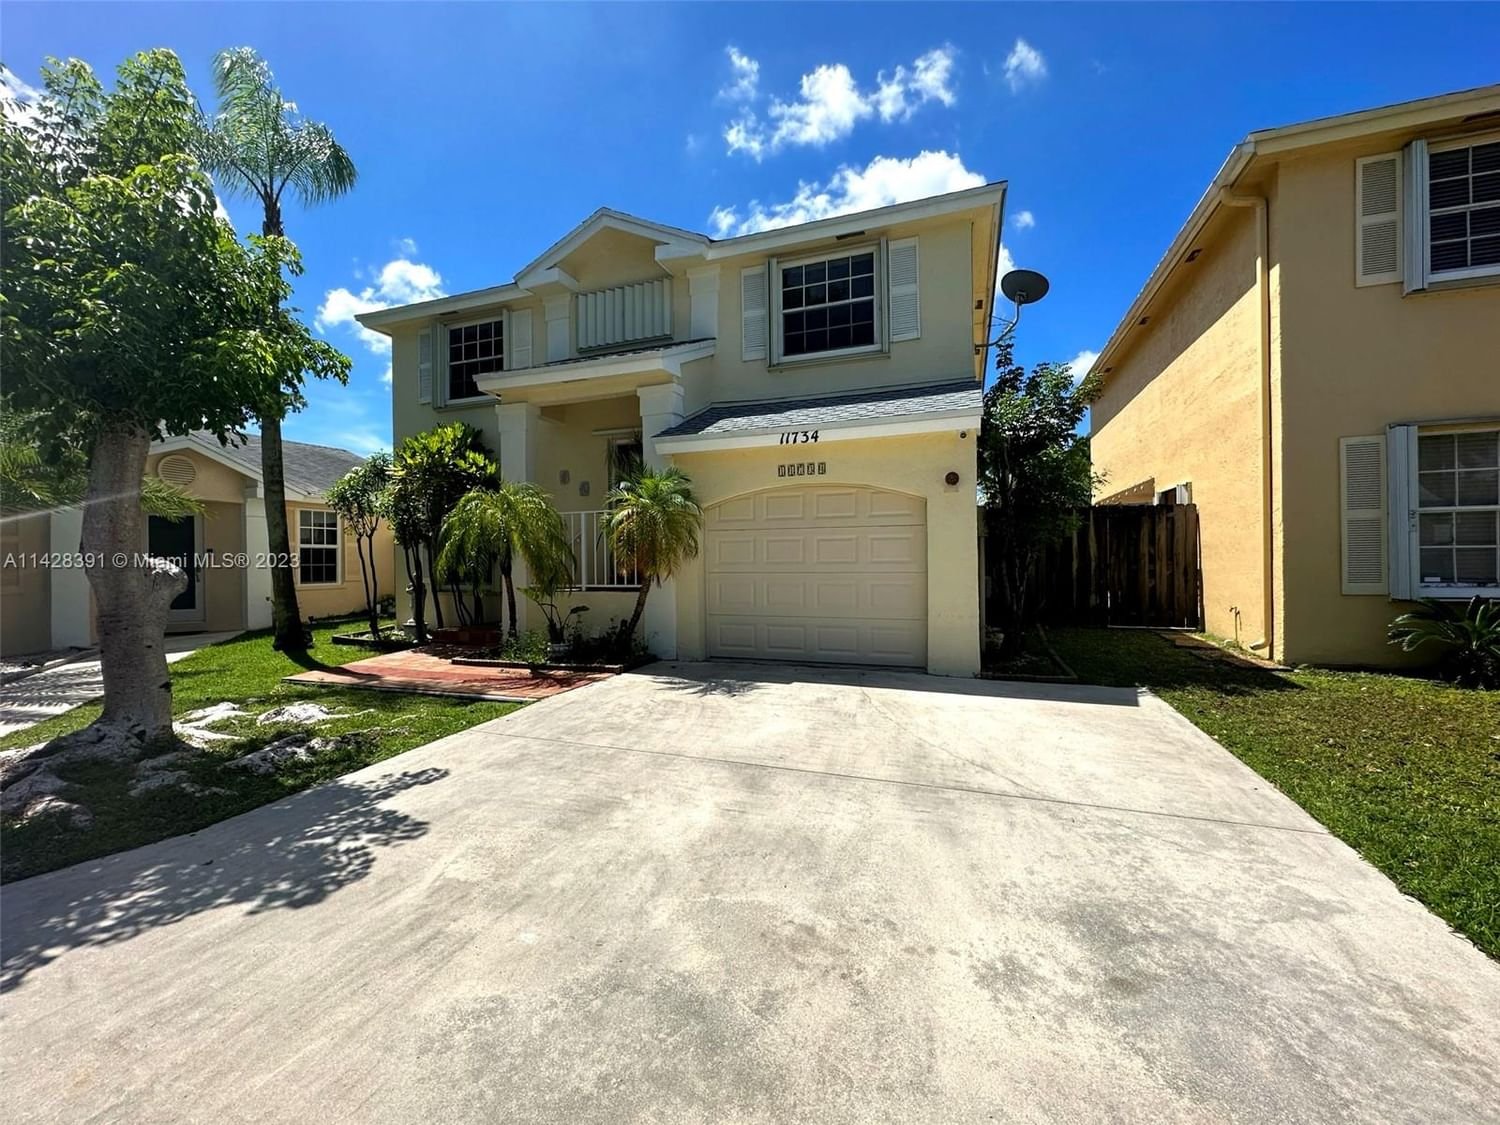 Real estate property located at 11734 99th Ln, Miami-Dade County, AMARETTO 1ST ADDN, Miami, FL